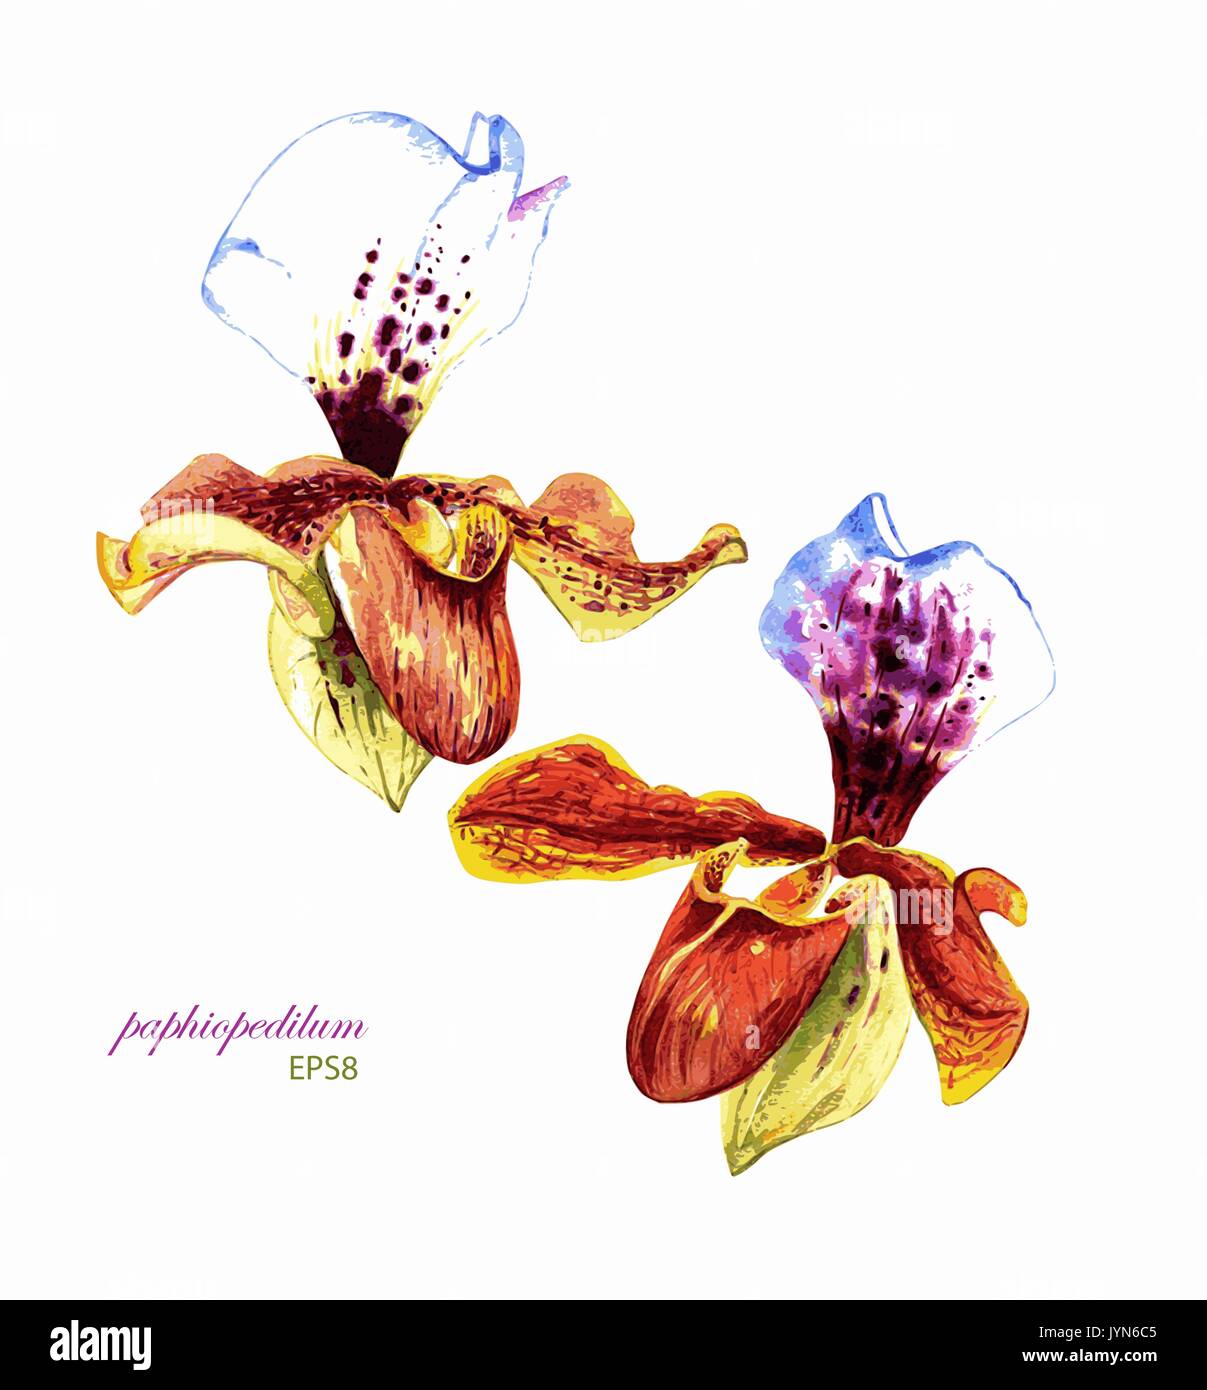 La main peinte à l'aquarelle orchidées Paphiopedilum vecteur. Isolé sur fond blanc. Des éléments de votre conception. Illustration de Vecteur